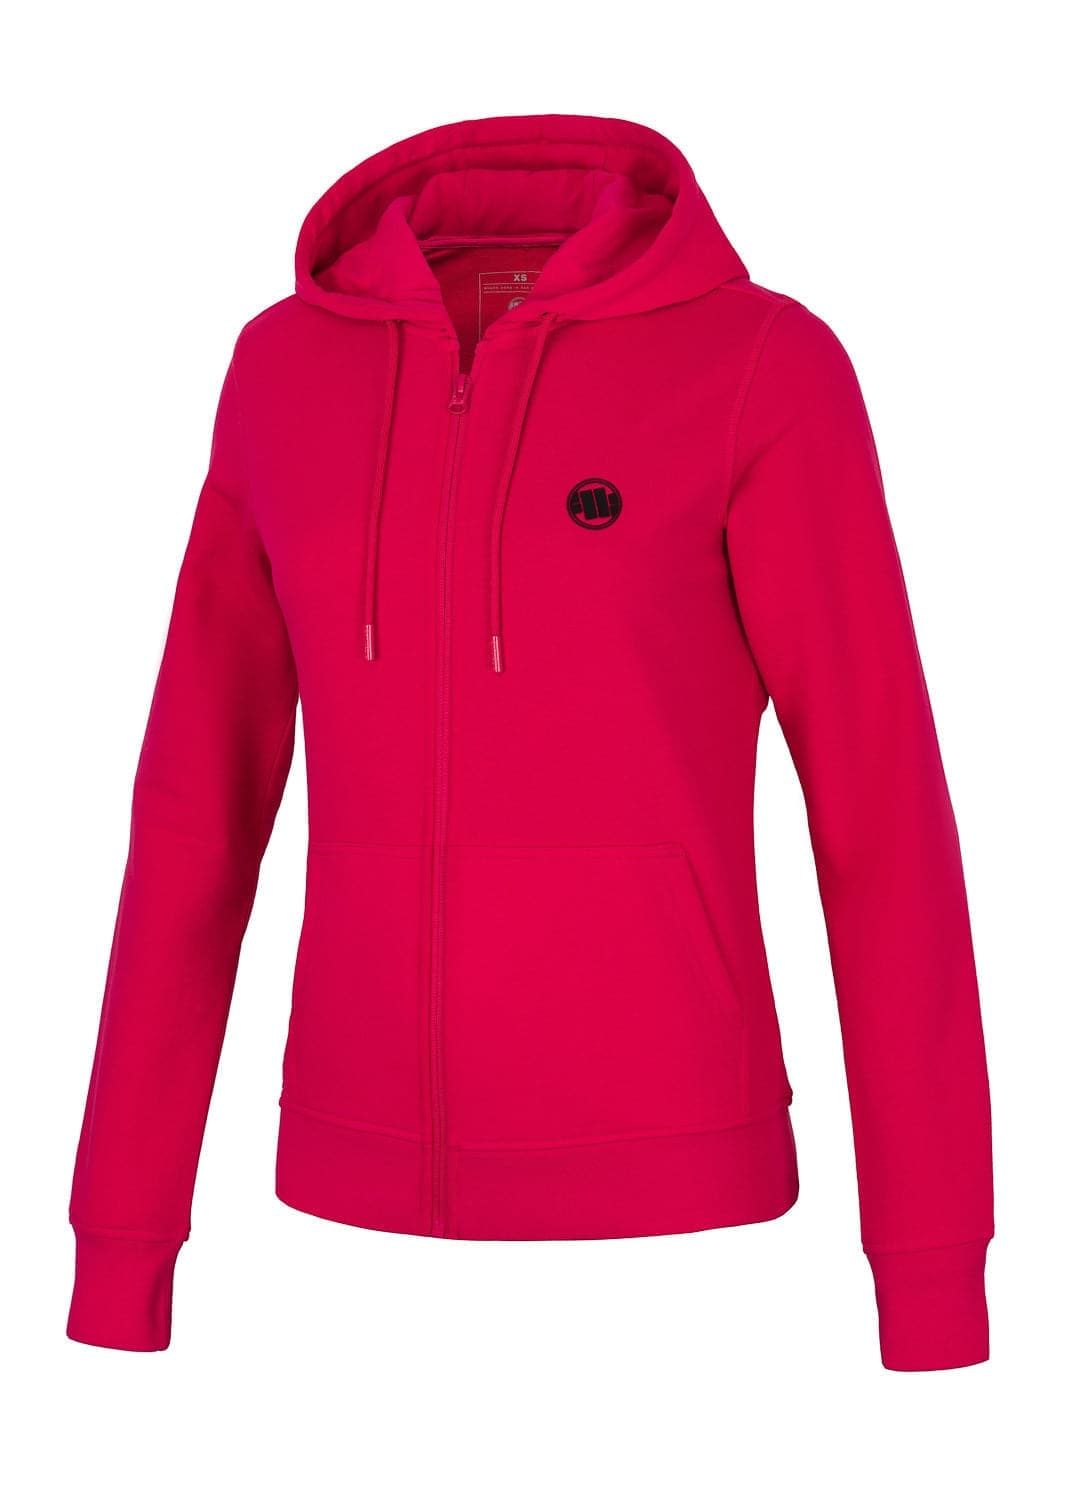 SELMA Raspberry Red zip hoodie.